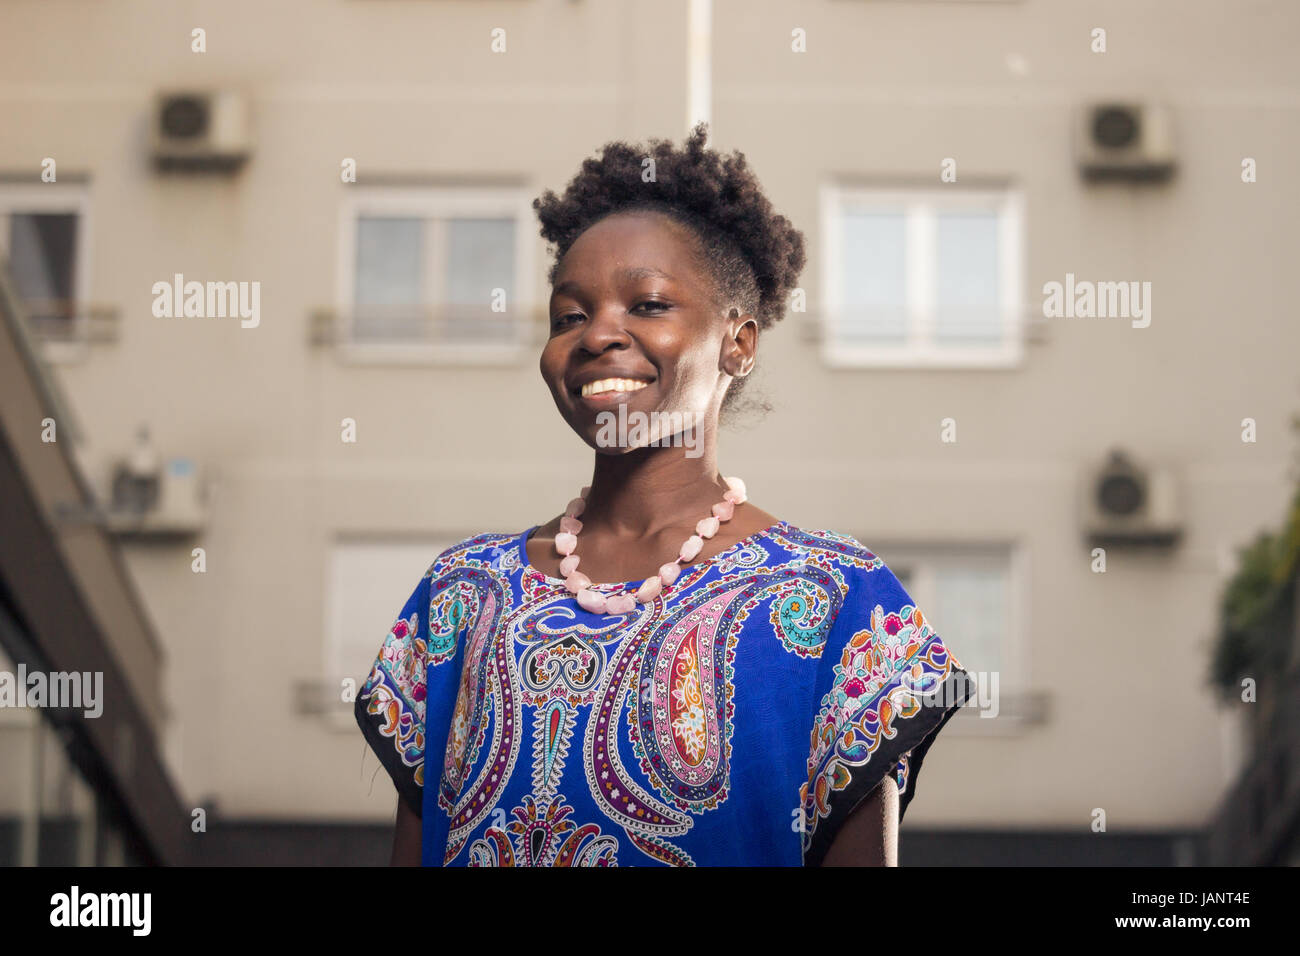 L'un, jeune adulte, black african american woman, 29 ans, happy smiling, tête et épaules, derrière les bâtiments, à la recherche d'appareil photo, low angle vi Banque D'Images